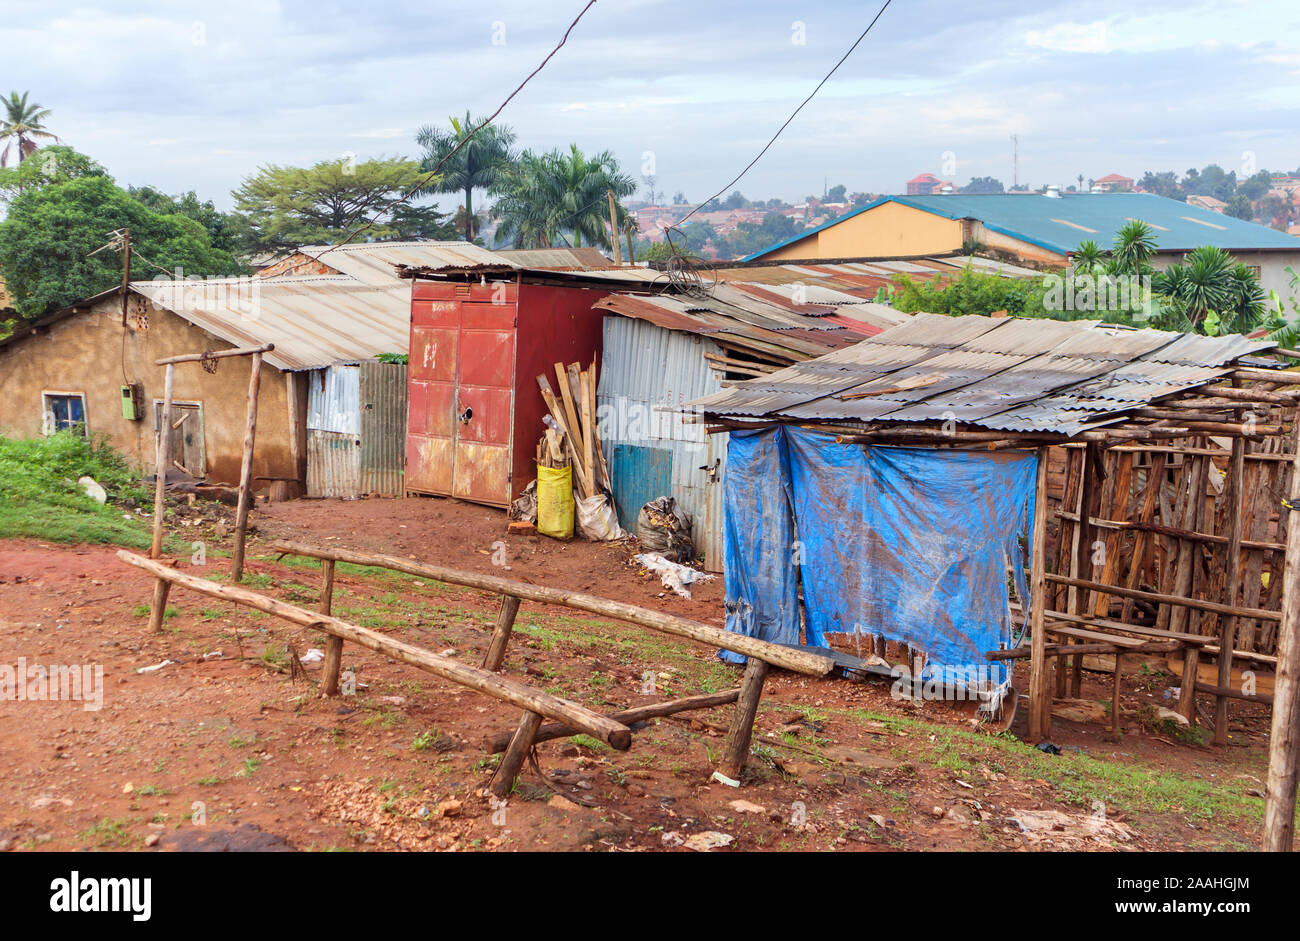 Straße Blick auf die Dritte Welt Slums Gemeinschaft Gebäude am Stadtrand von Kampala, Uganda mit Wellblechdach Hütten Stockfoto